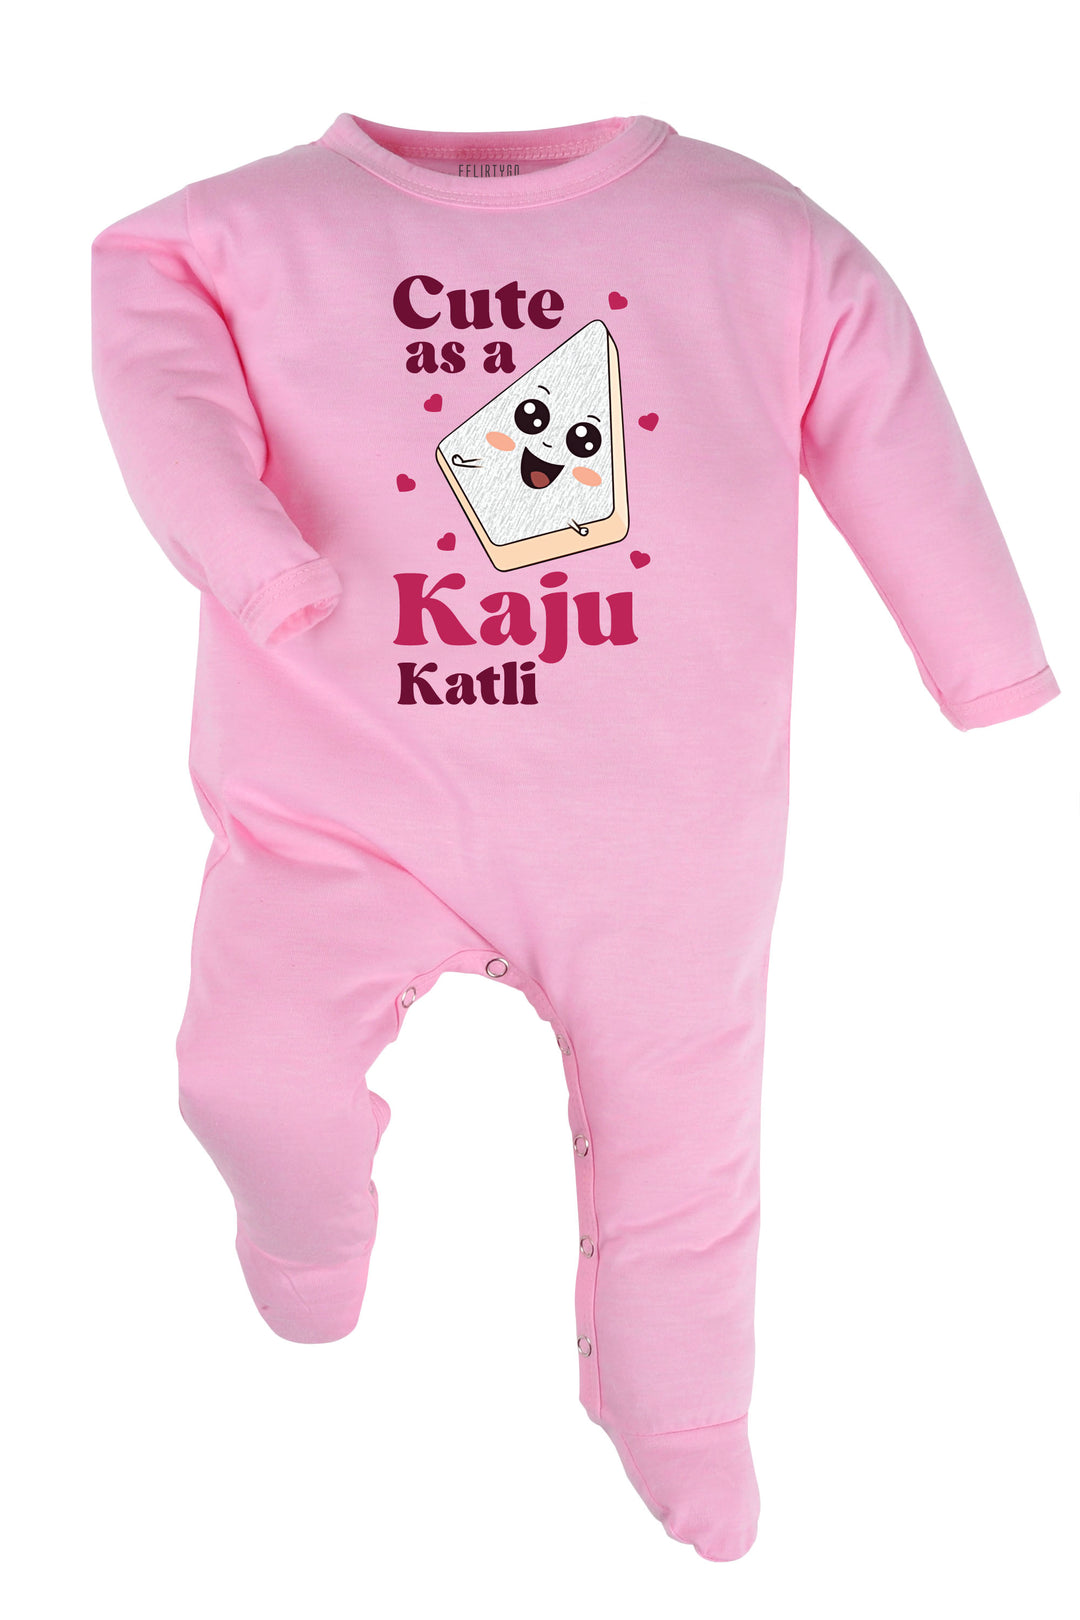 Cute As A Kaju Katli Baby Romper | Onesies